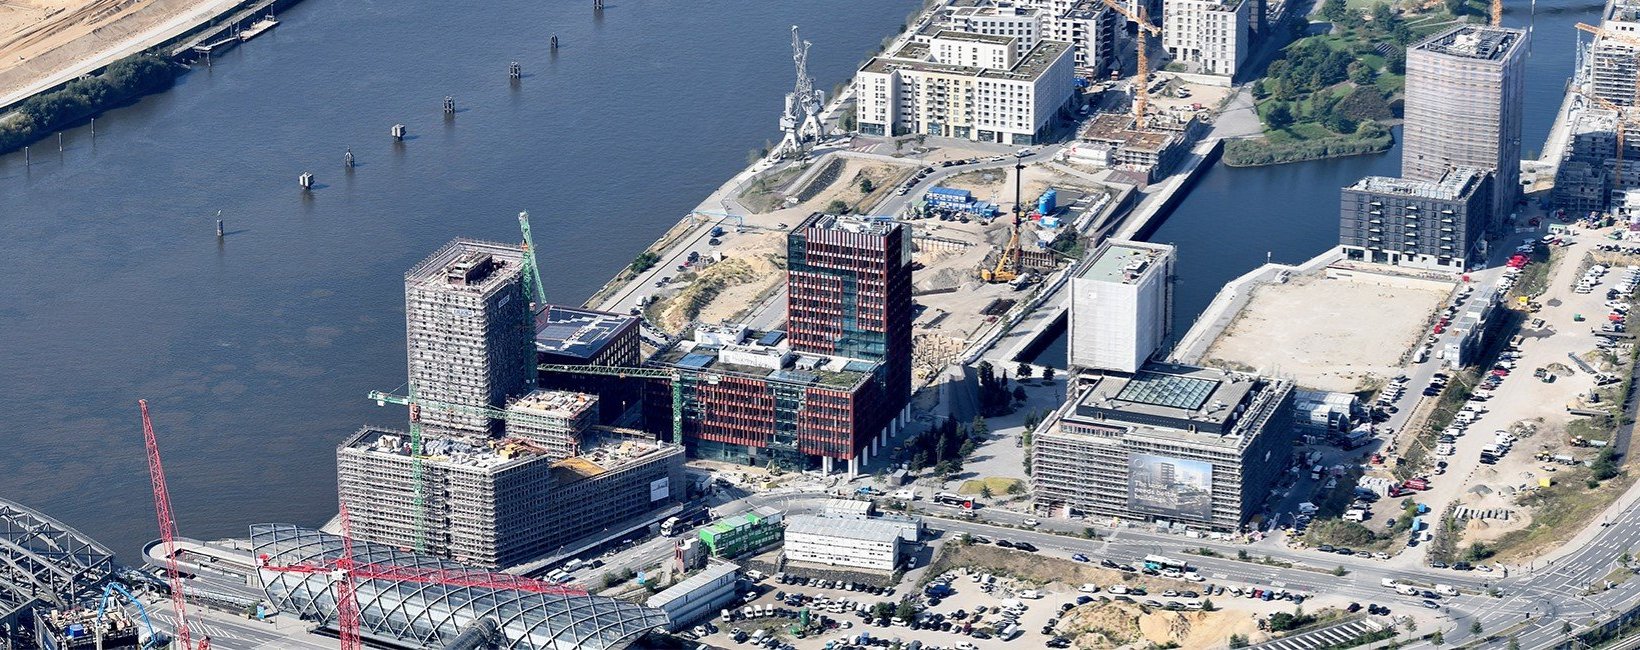 Luftaufnahme der Baustelle in der Hamburger HafenCity mit dem ElbSide-Bürogebäude